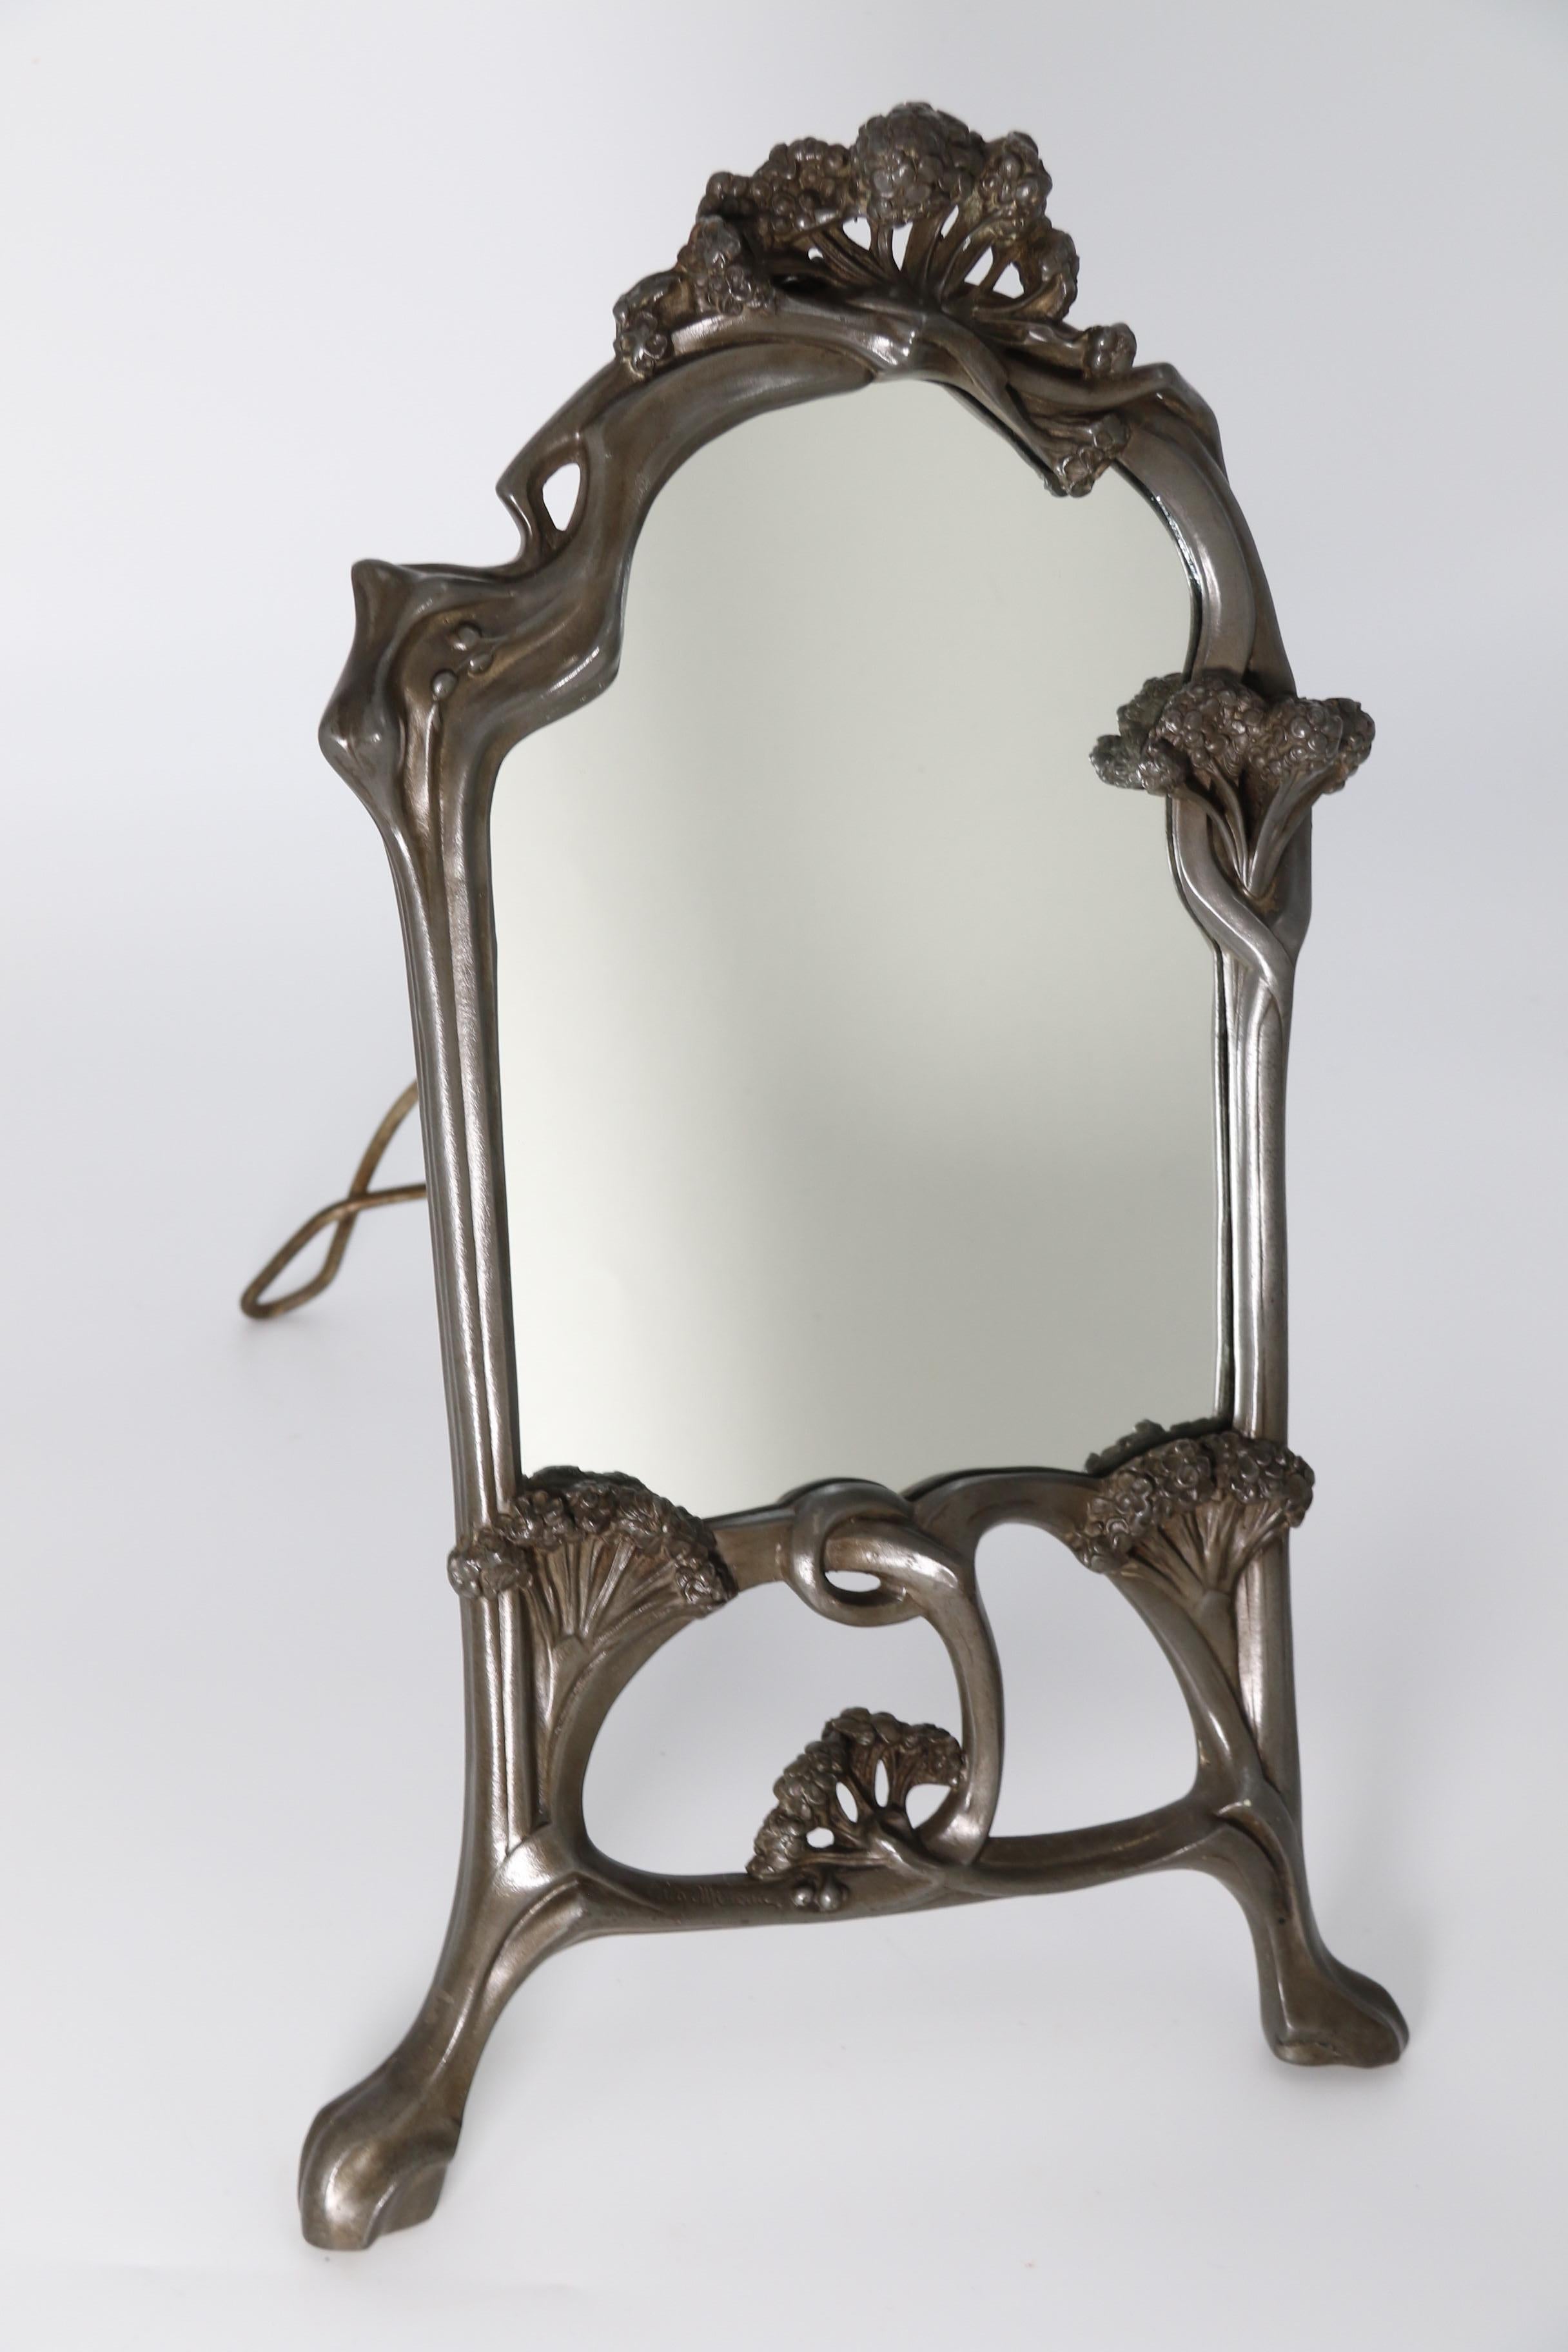 
Cet élégant miroir en étain massif est un miroir de table indépendant doté d'un support de chevalet articulé qui se replie sur une charnière de butée pour soutenir le miroir.

Le cadre du miroir est une œuvre d'art sculpturale. Il a été conçu et